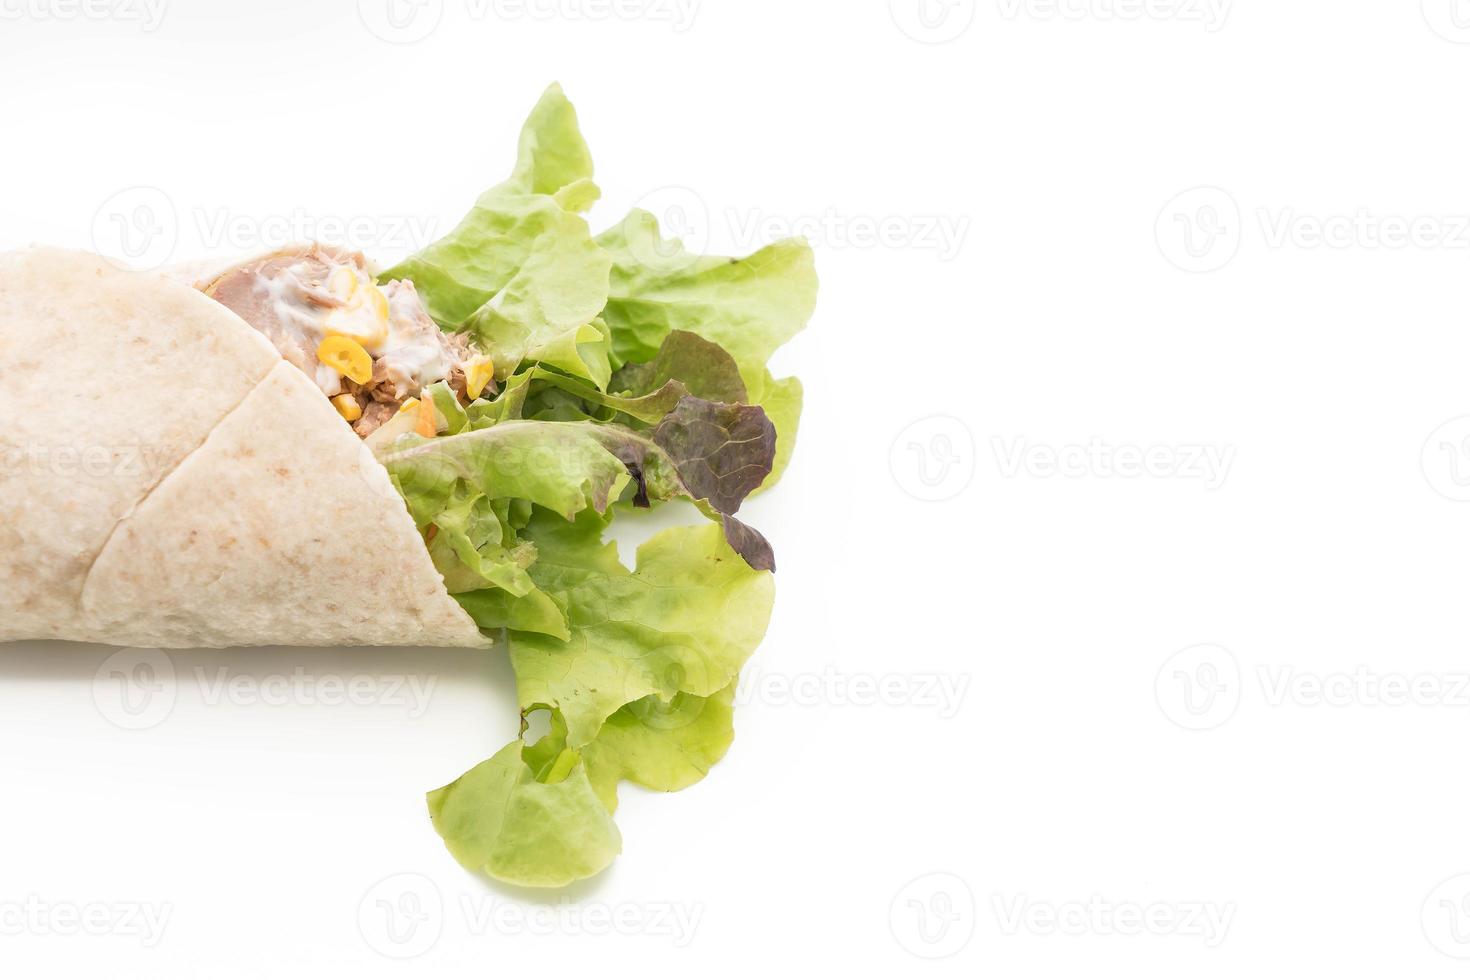 embrulhe o rolo de salada com salada de atum e milho no fundo branco foto